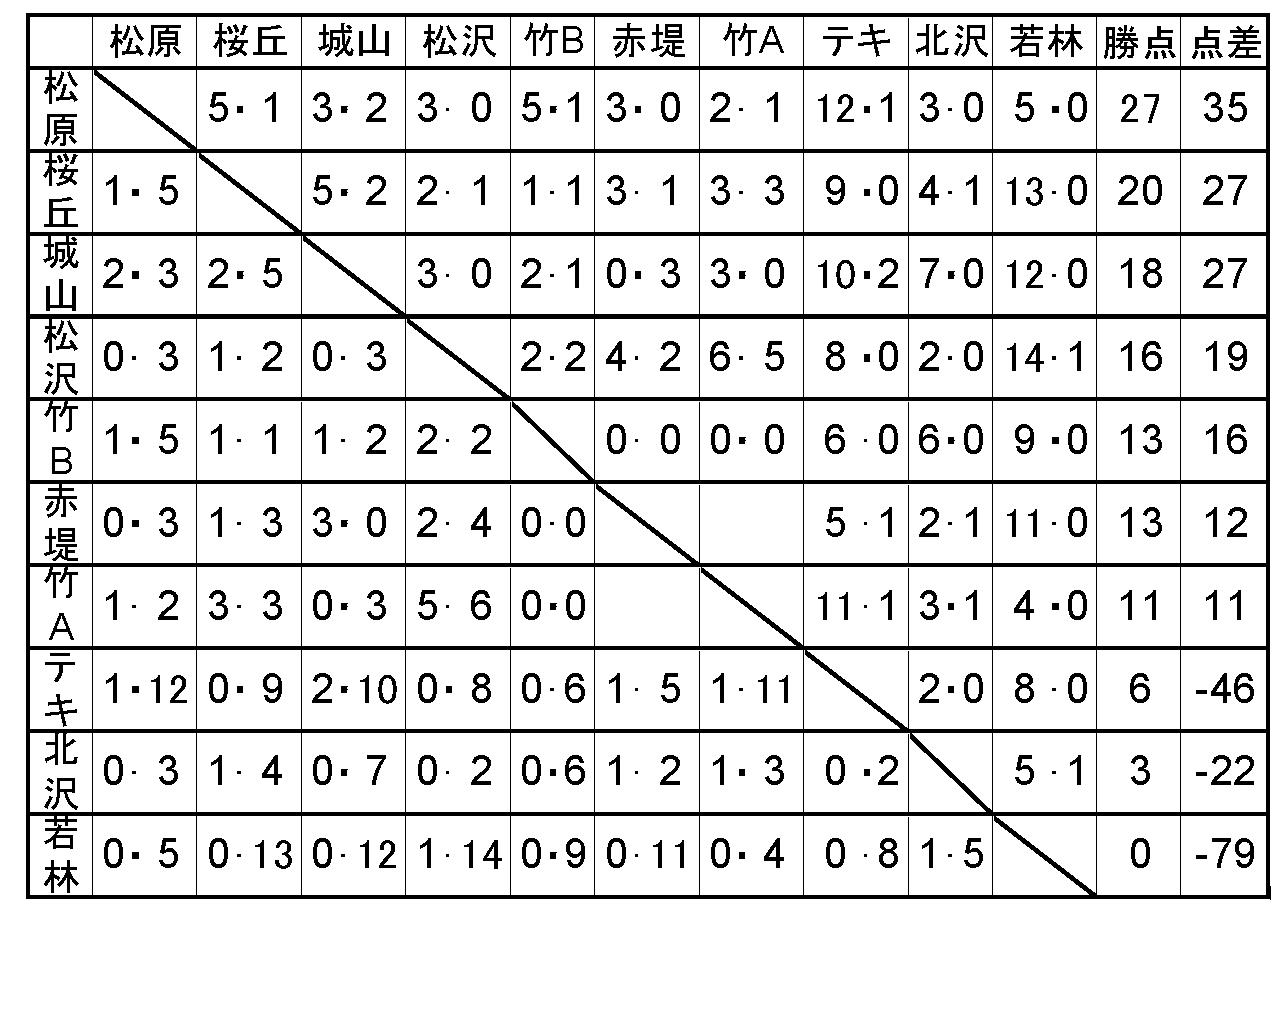 08年度リーグ戦結果 世田谷eastリーグ オフィシャルサイト